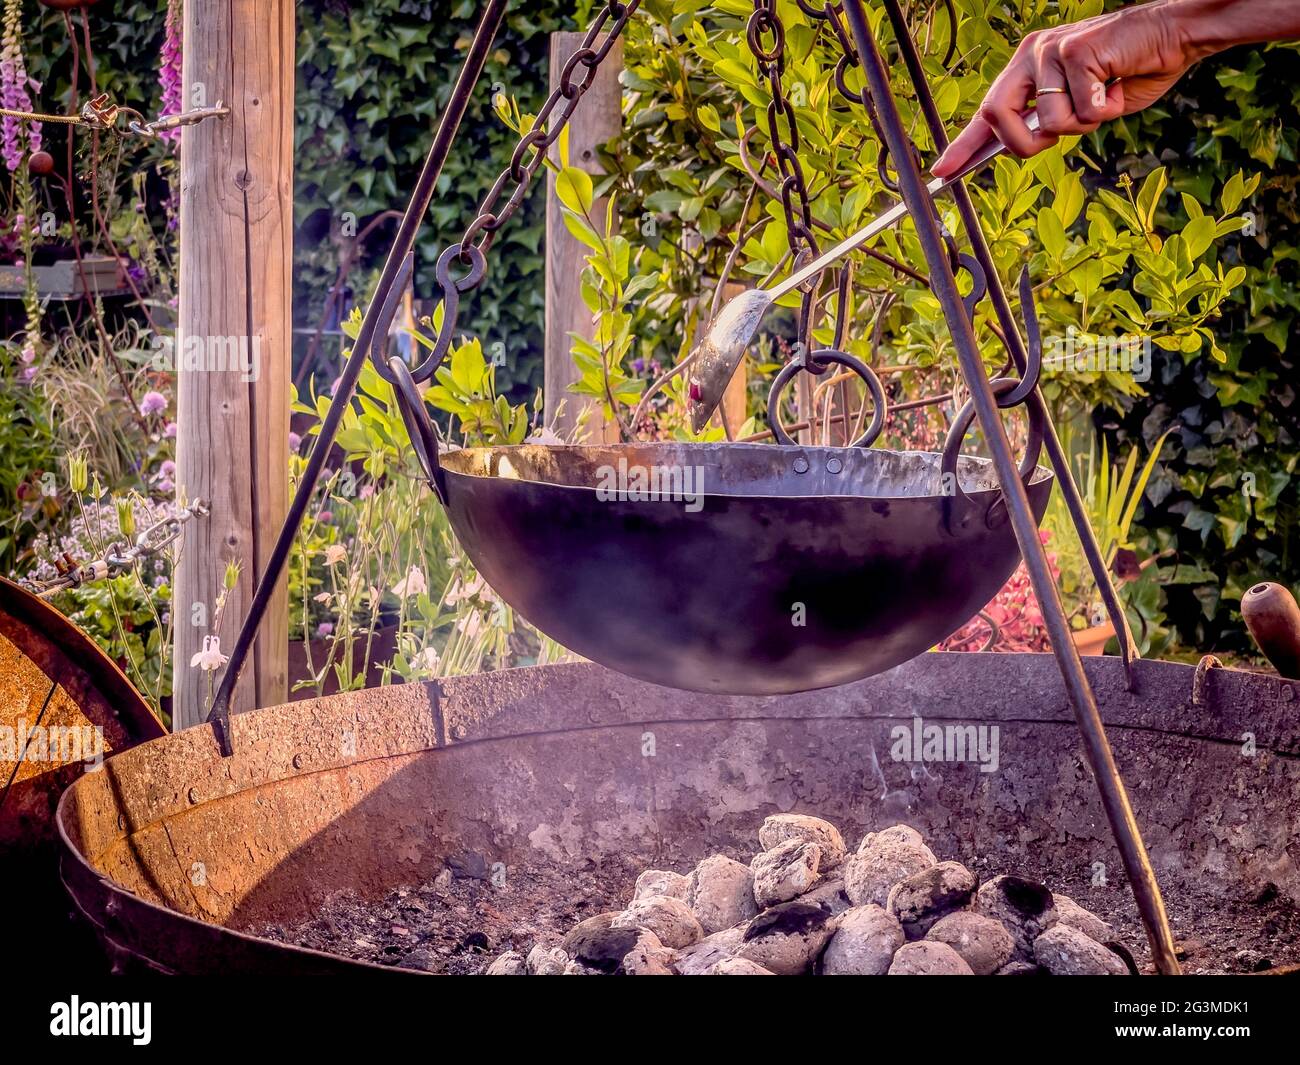 Kochen im Freien mit Holzkohle in Feuerbecken mit Stativ und Topf, der an Ketten hängt Stockfoto